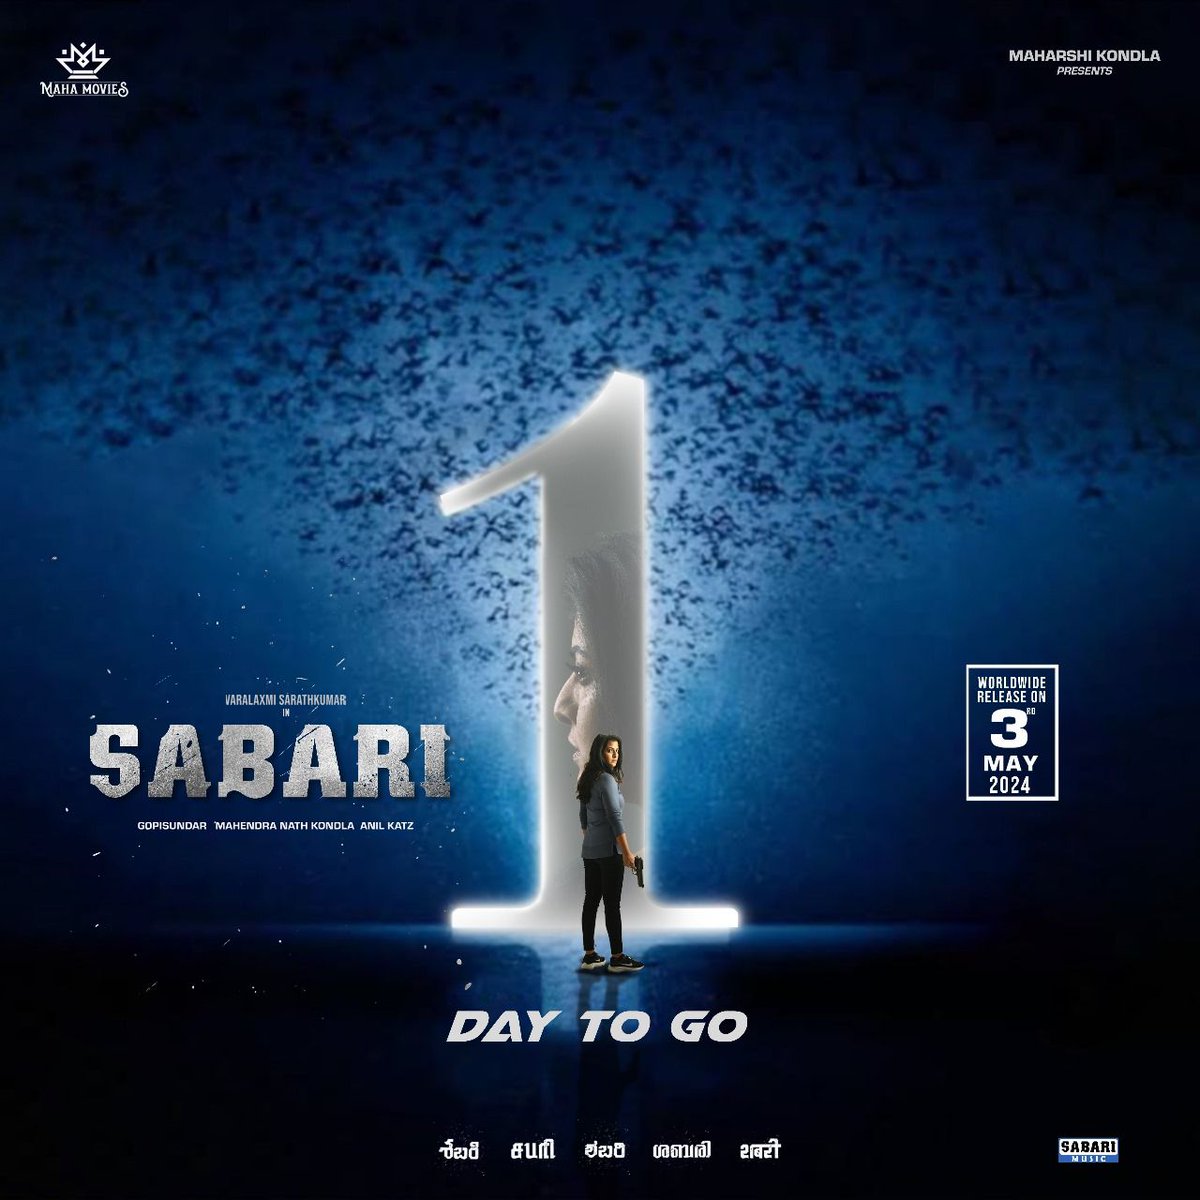 #Sabari in theaters tomorrow